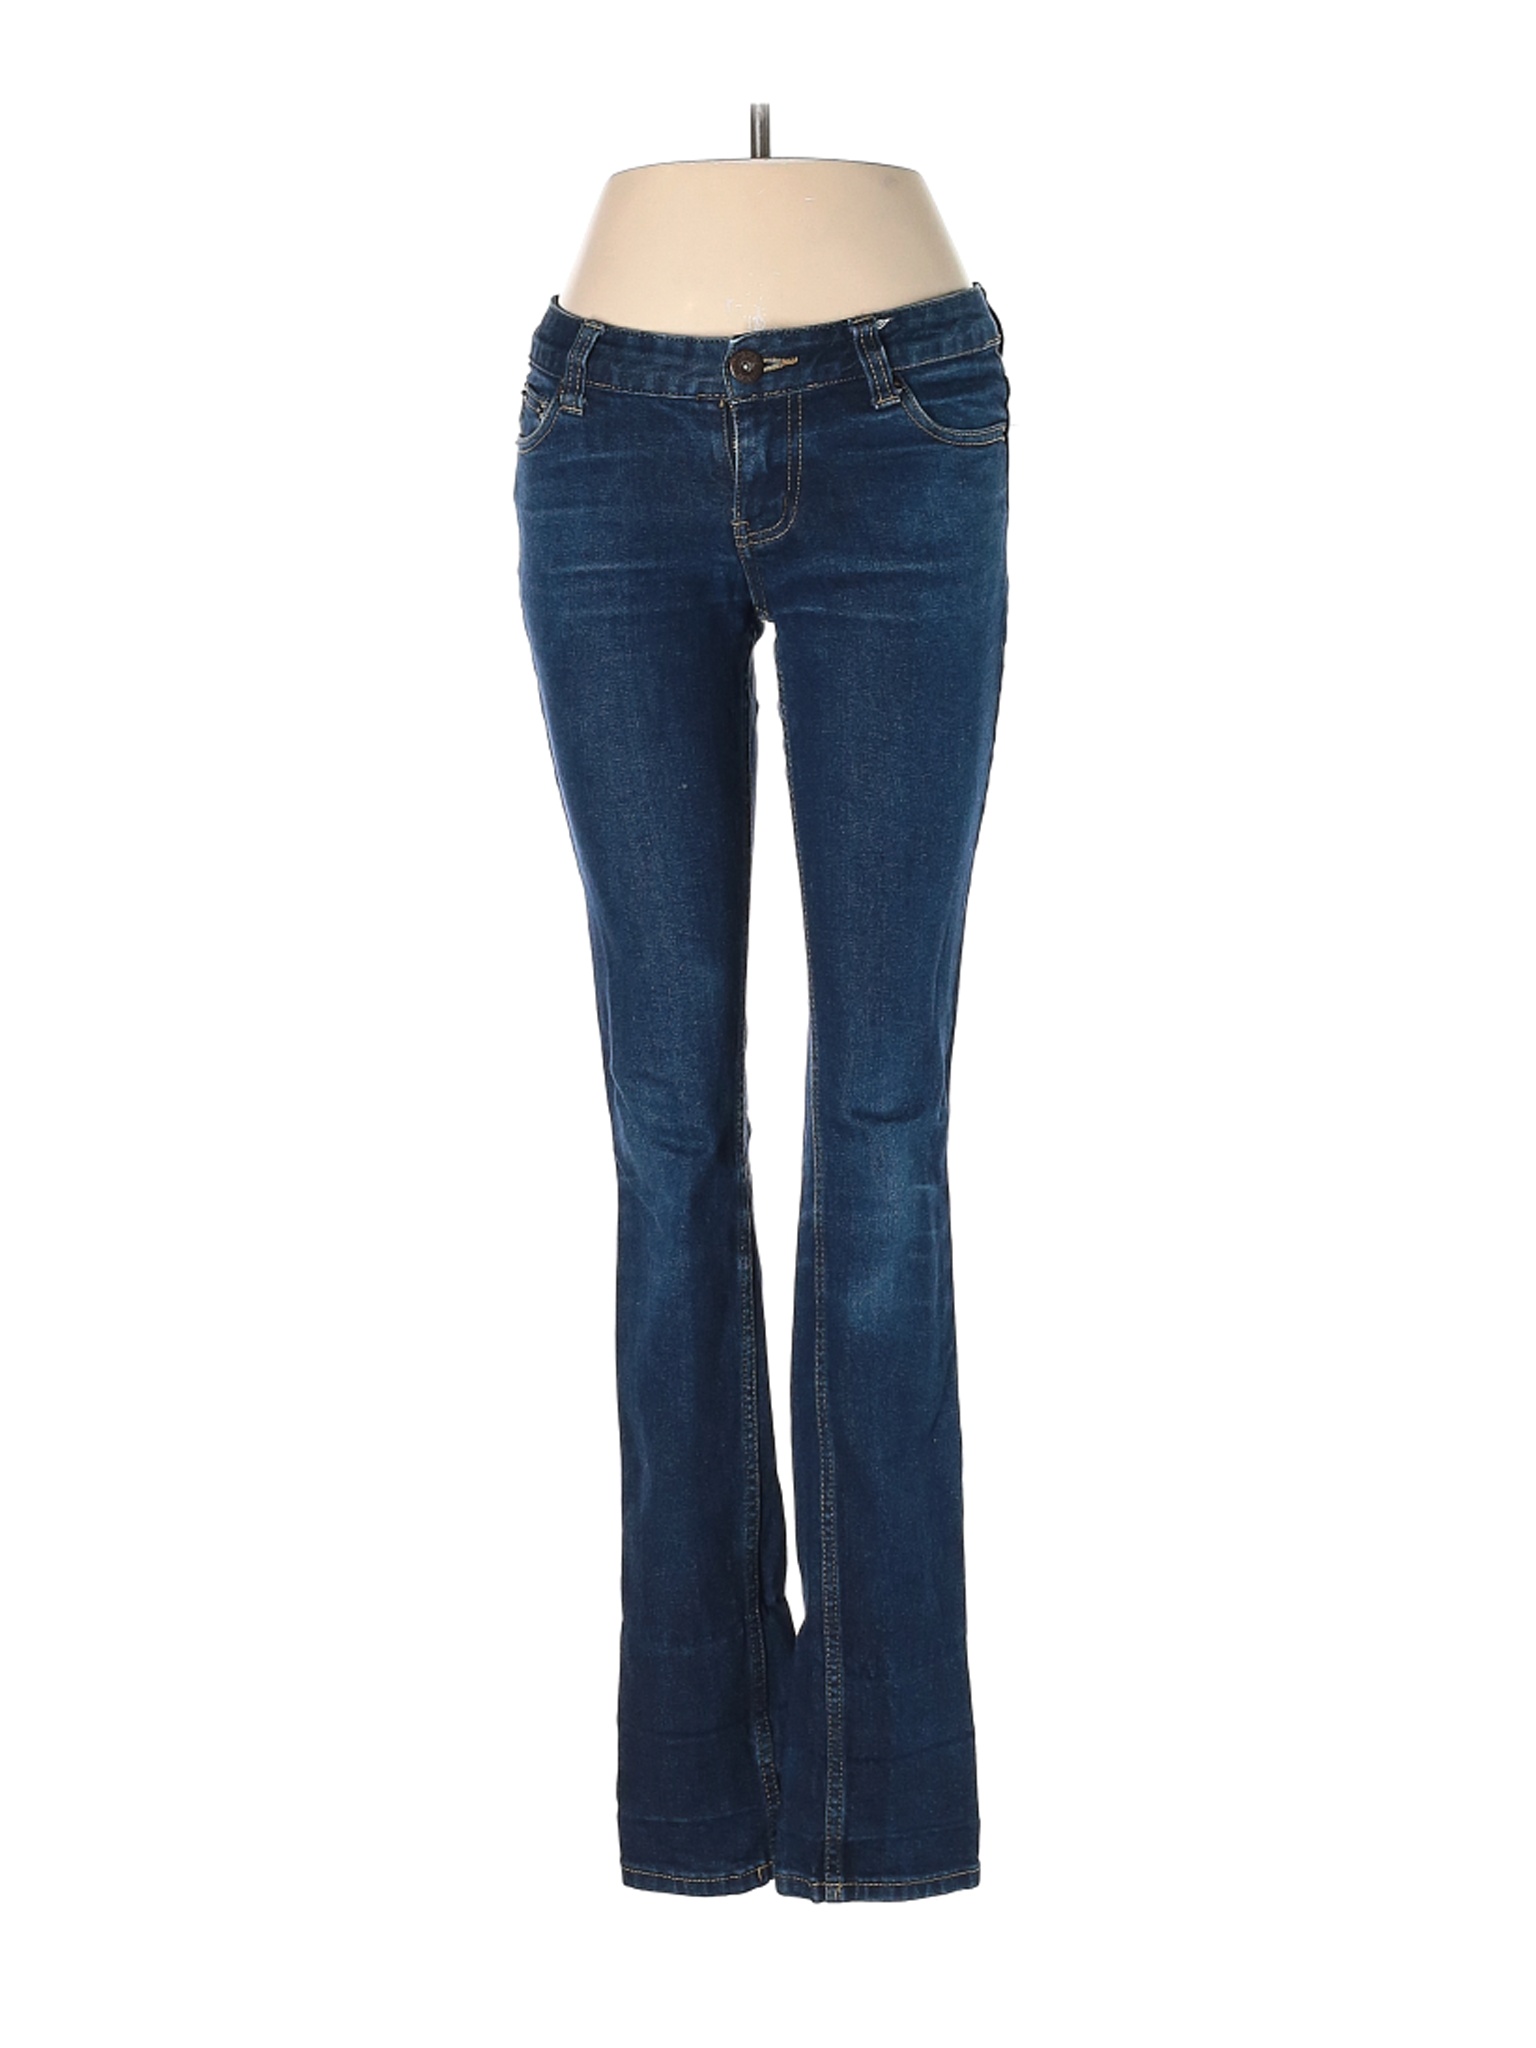 Just Jeans Women Blue Jeans 8 | eBay